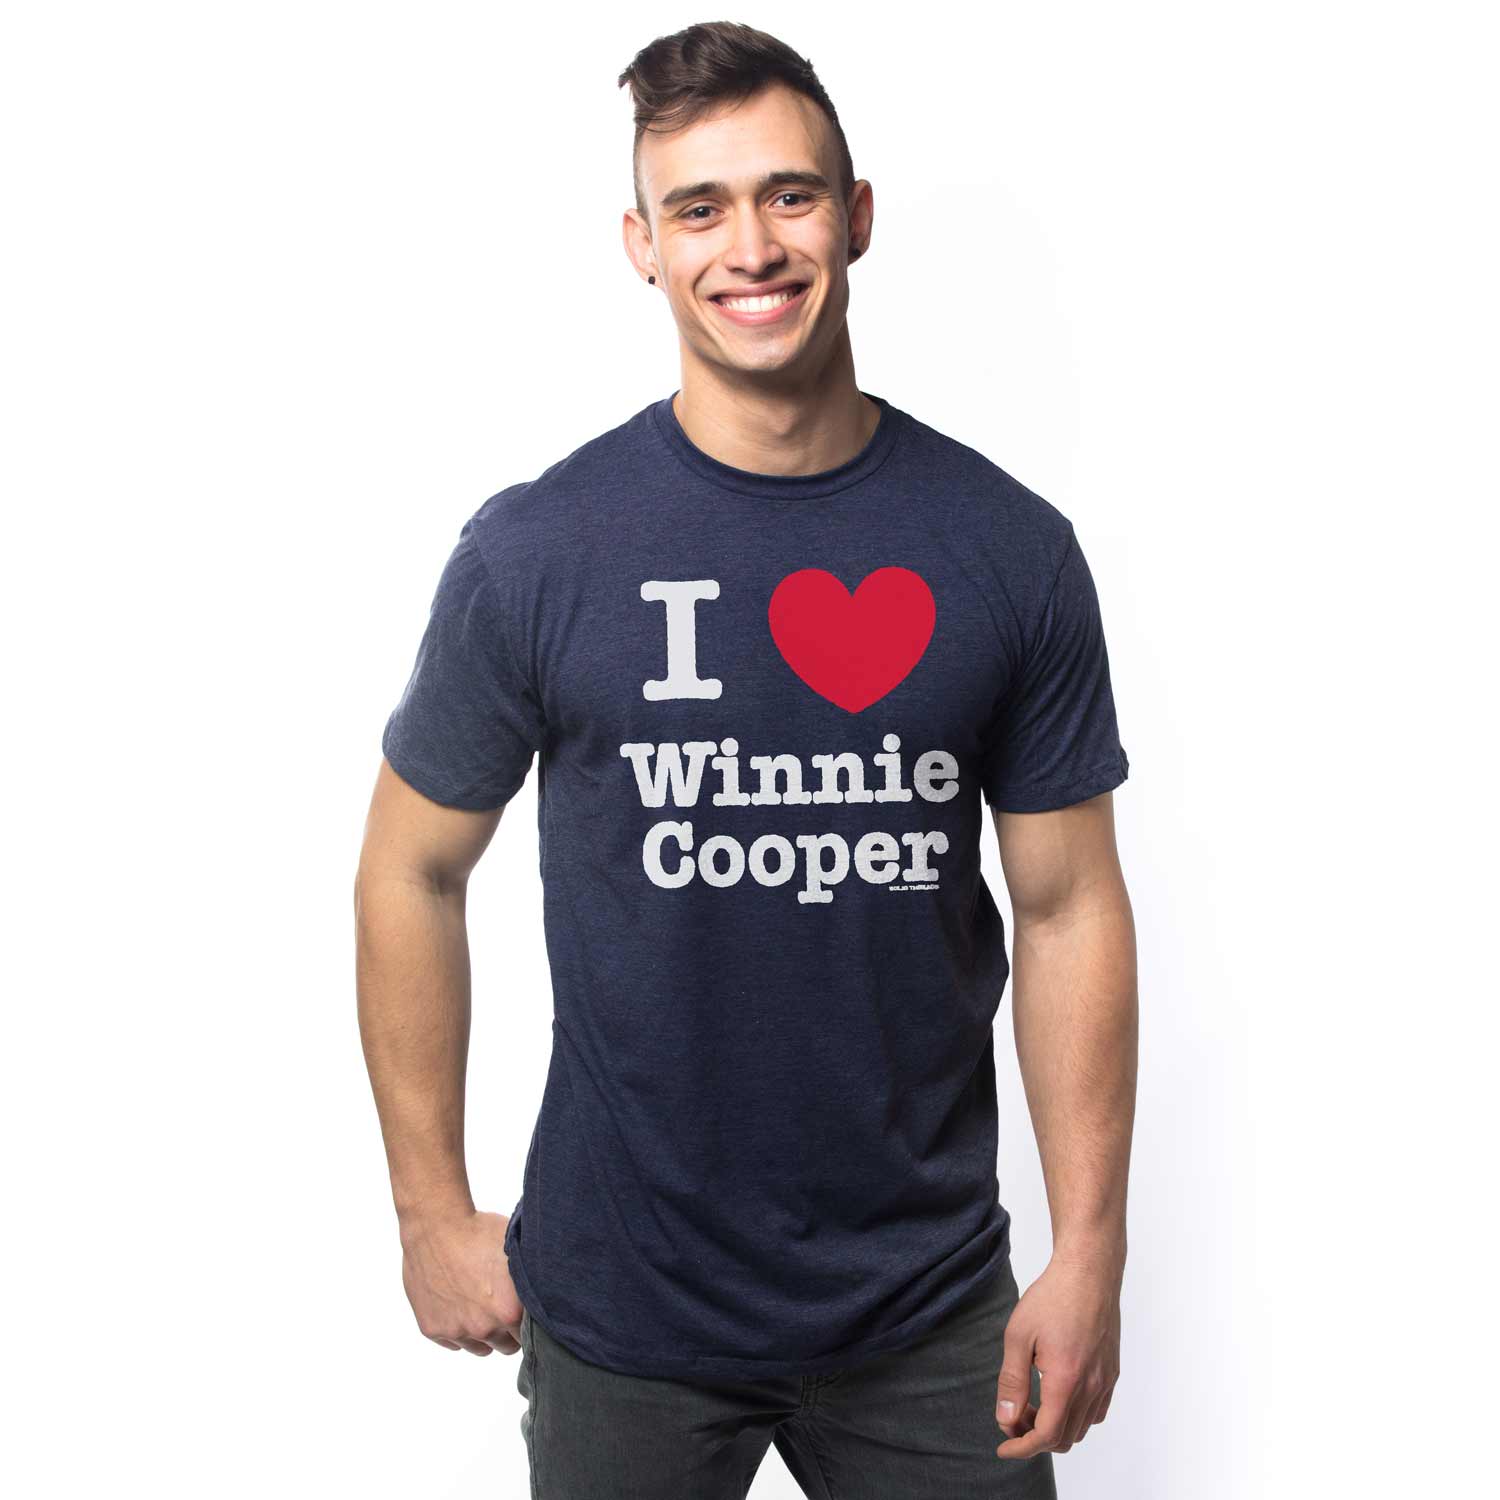 Men's Winnie Cooper Vintage Graphic Tee | Retro Wonder Years T-shirt on Model | Solid Threads